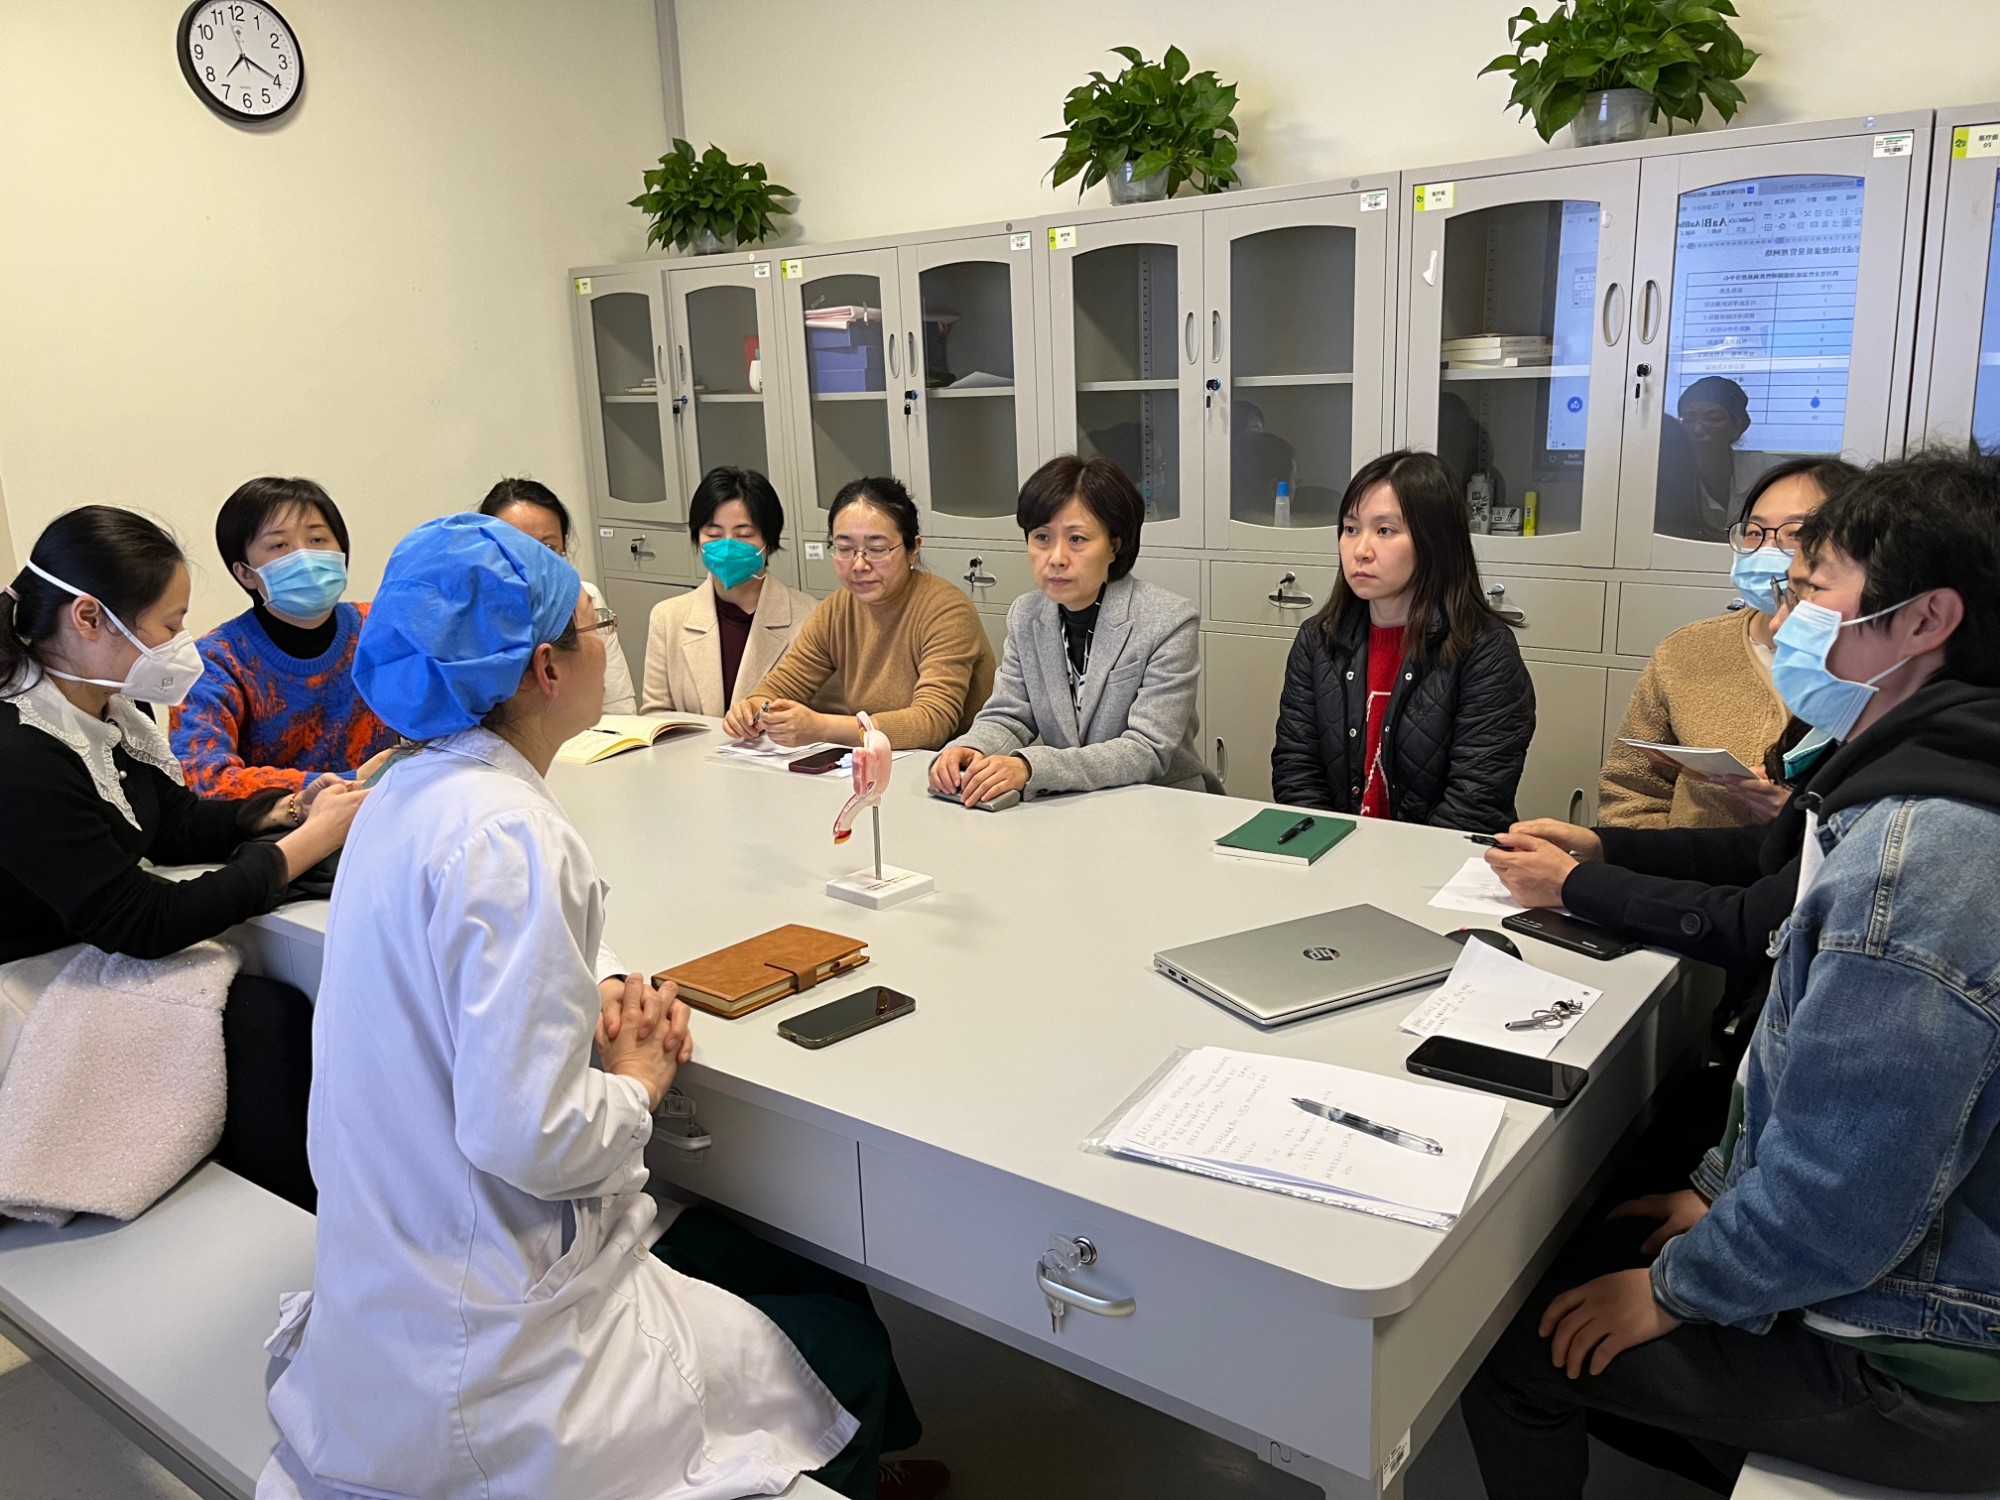 一年之计在于春
——四川大学华西第二医院康复医学科妇产康复科2023年工作部署会议